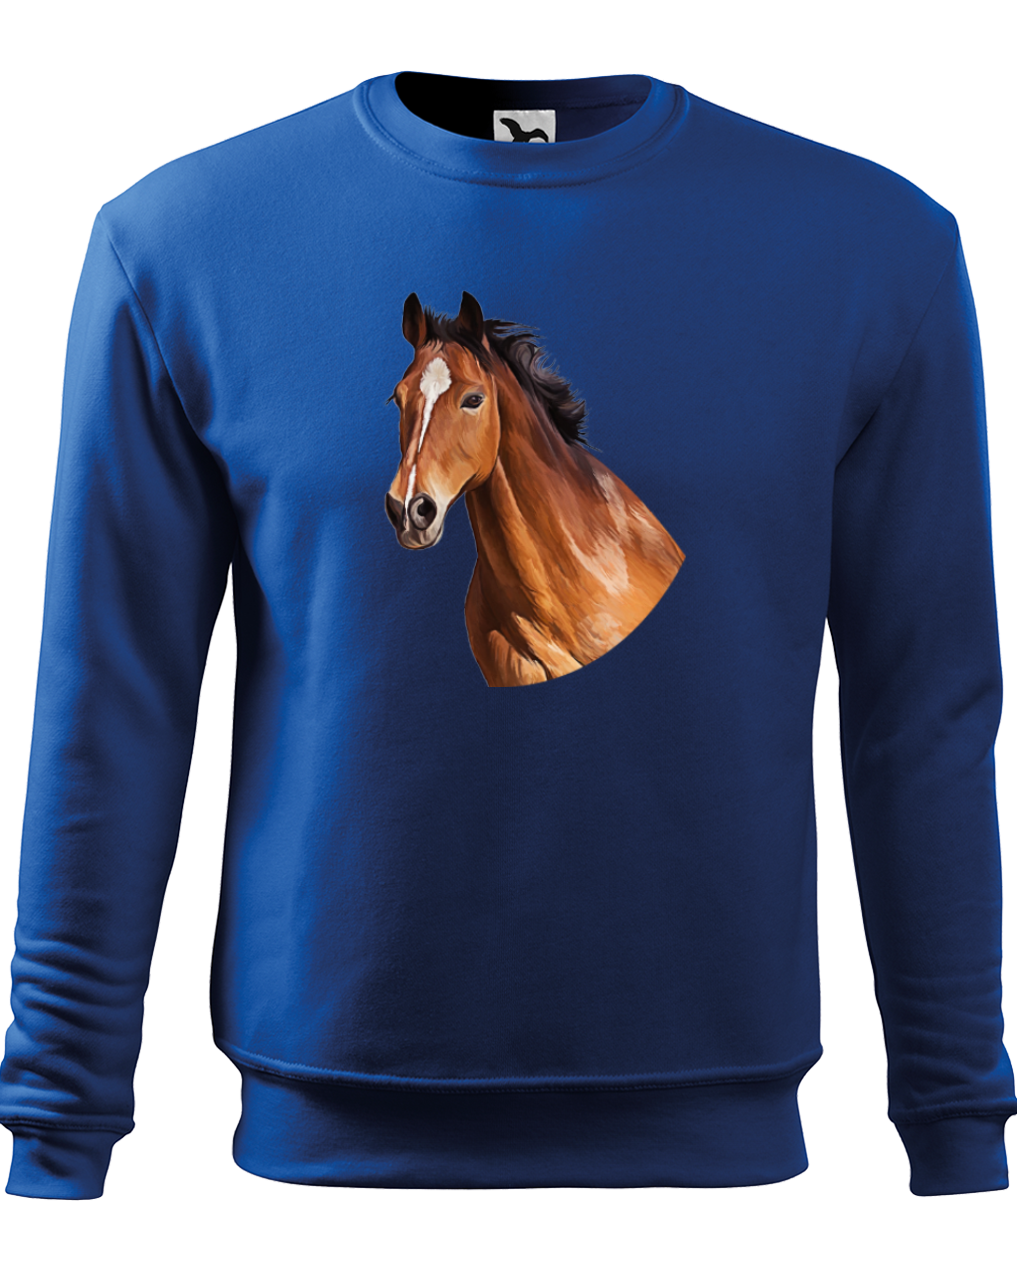 Mikina s koněm - Hnědák Velikost: XL, Barva: Královská modrá